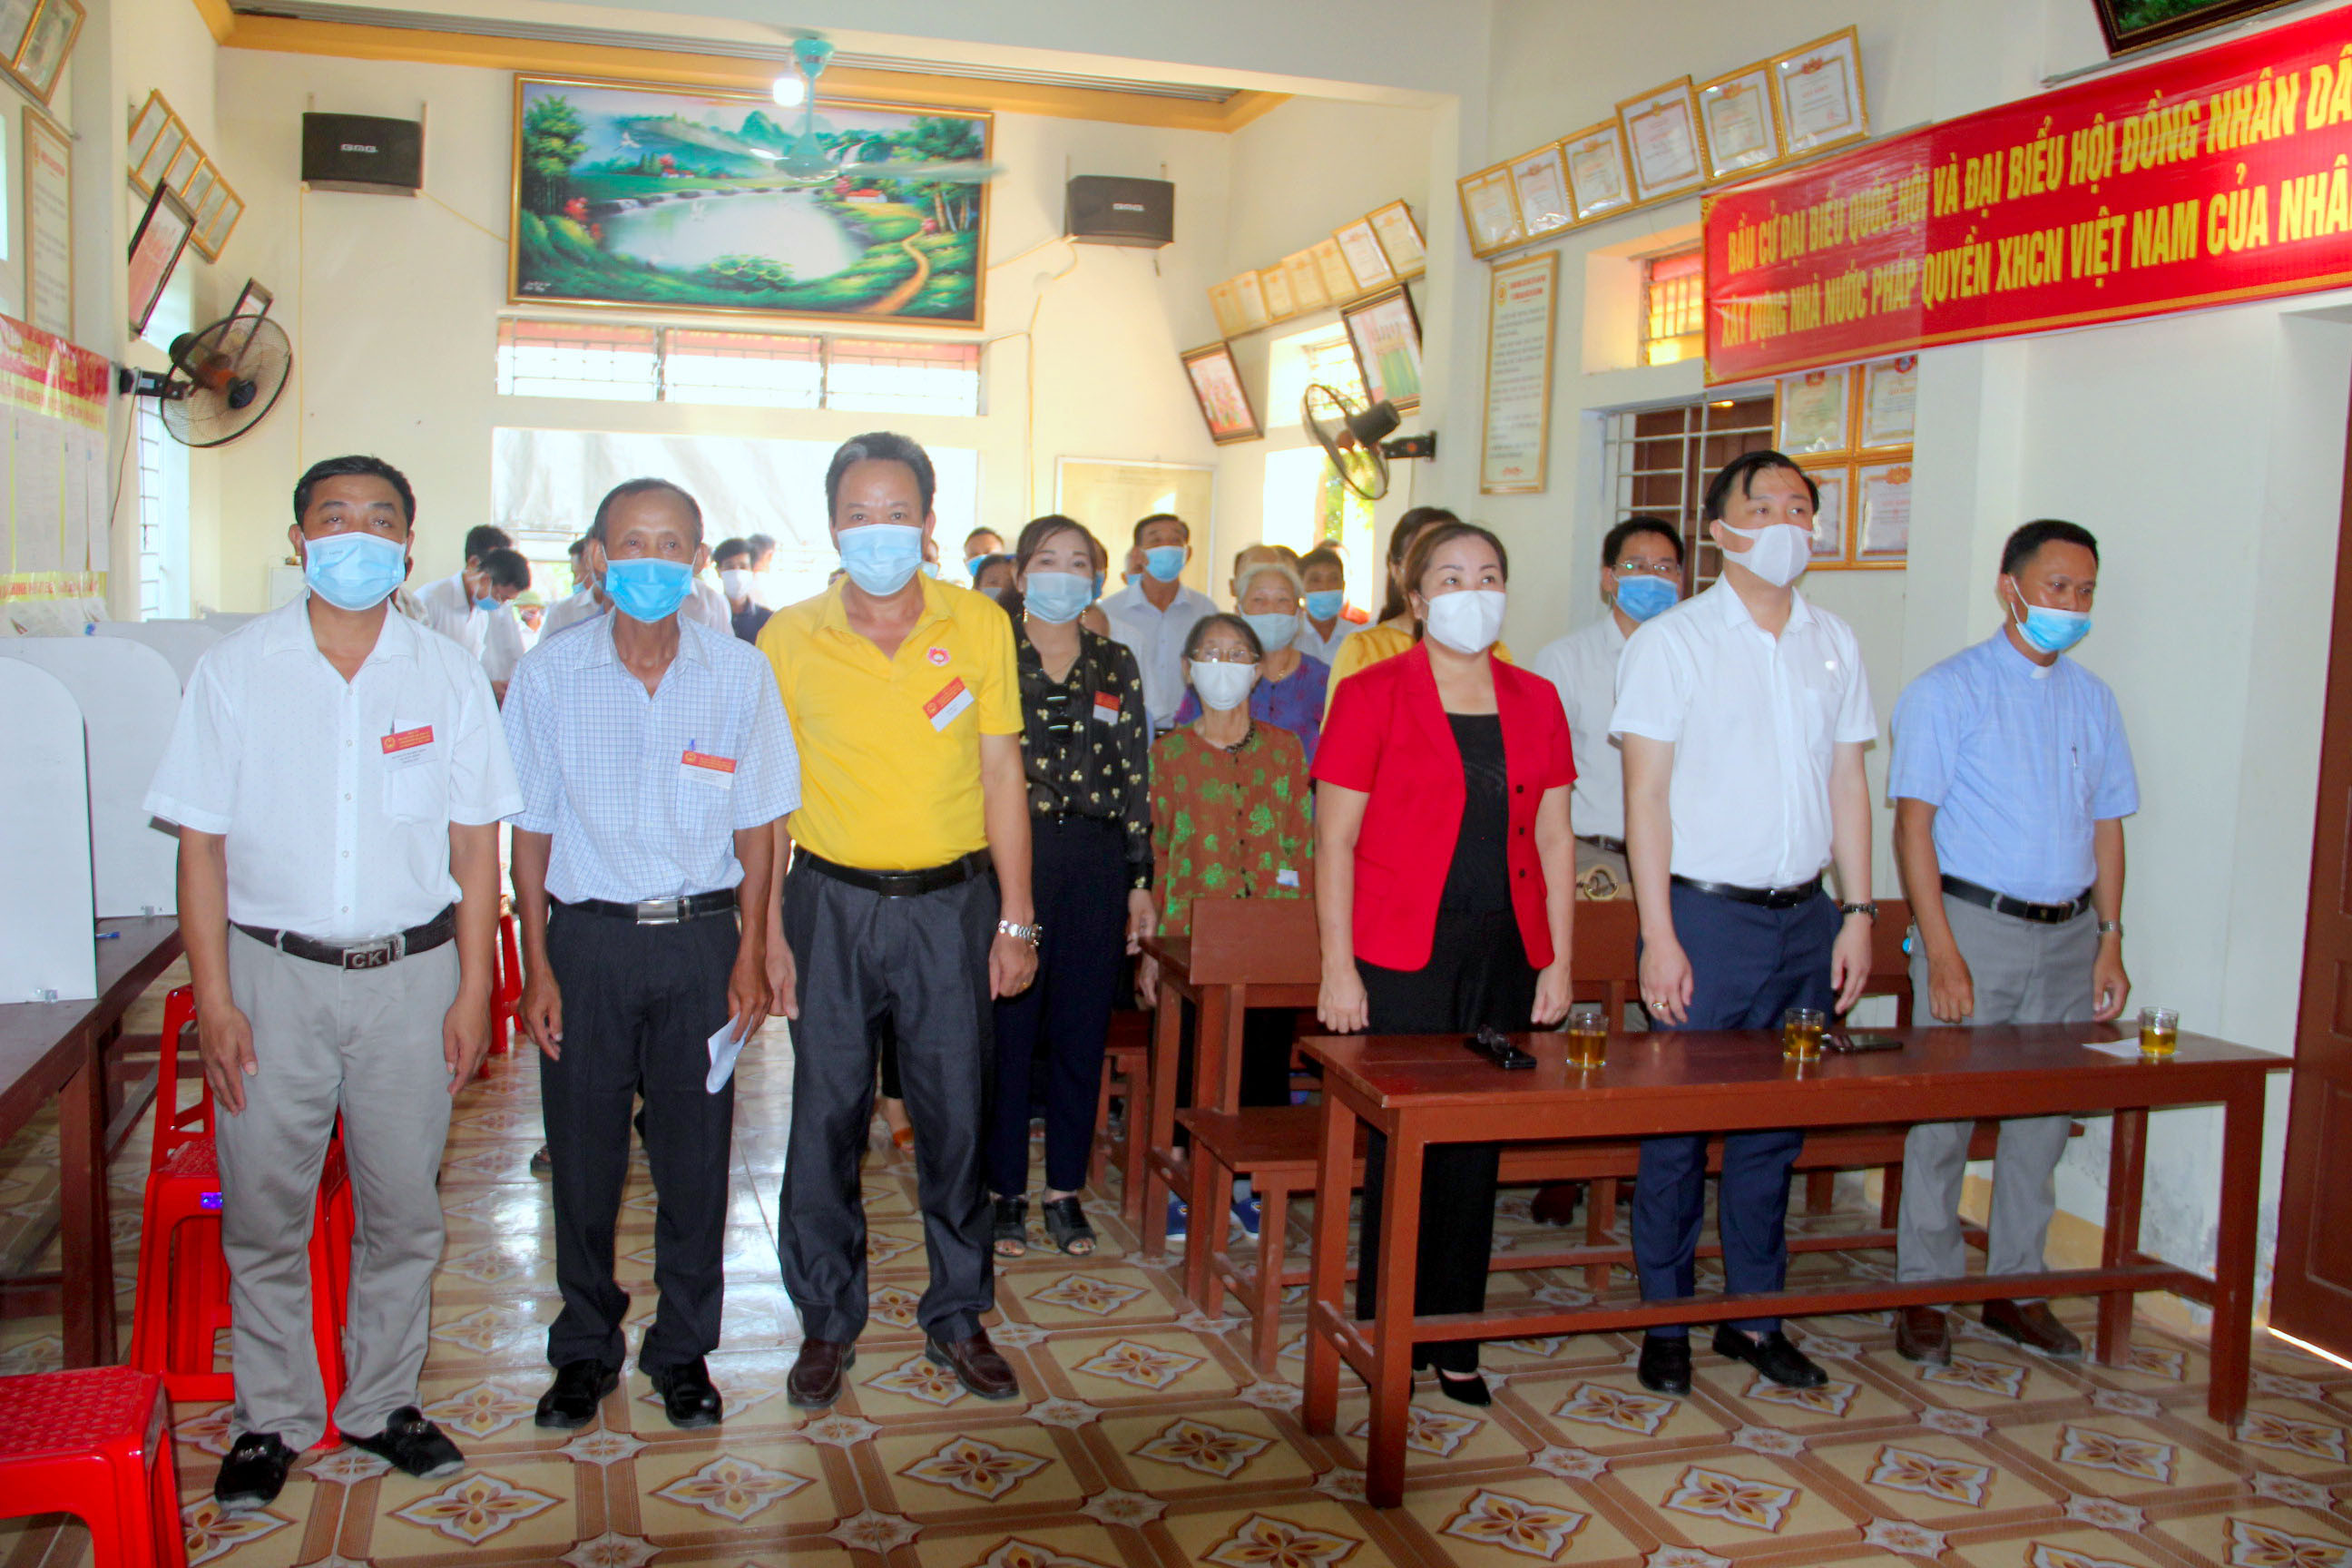 Các đại biểu và cử tri tại khu vực bỏ phiếu số 5 xã Hưng Thịnh, Hưng Nguyên nghiêm trang thực hiện nghi lễ chào cờ. Ảnh: Quang An